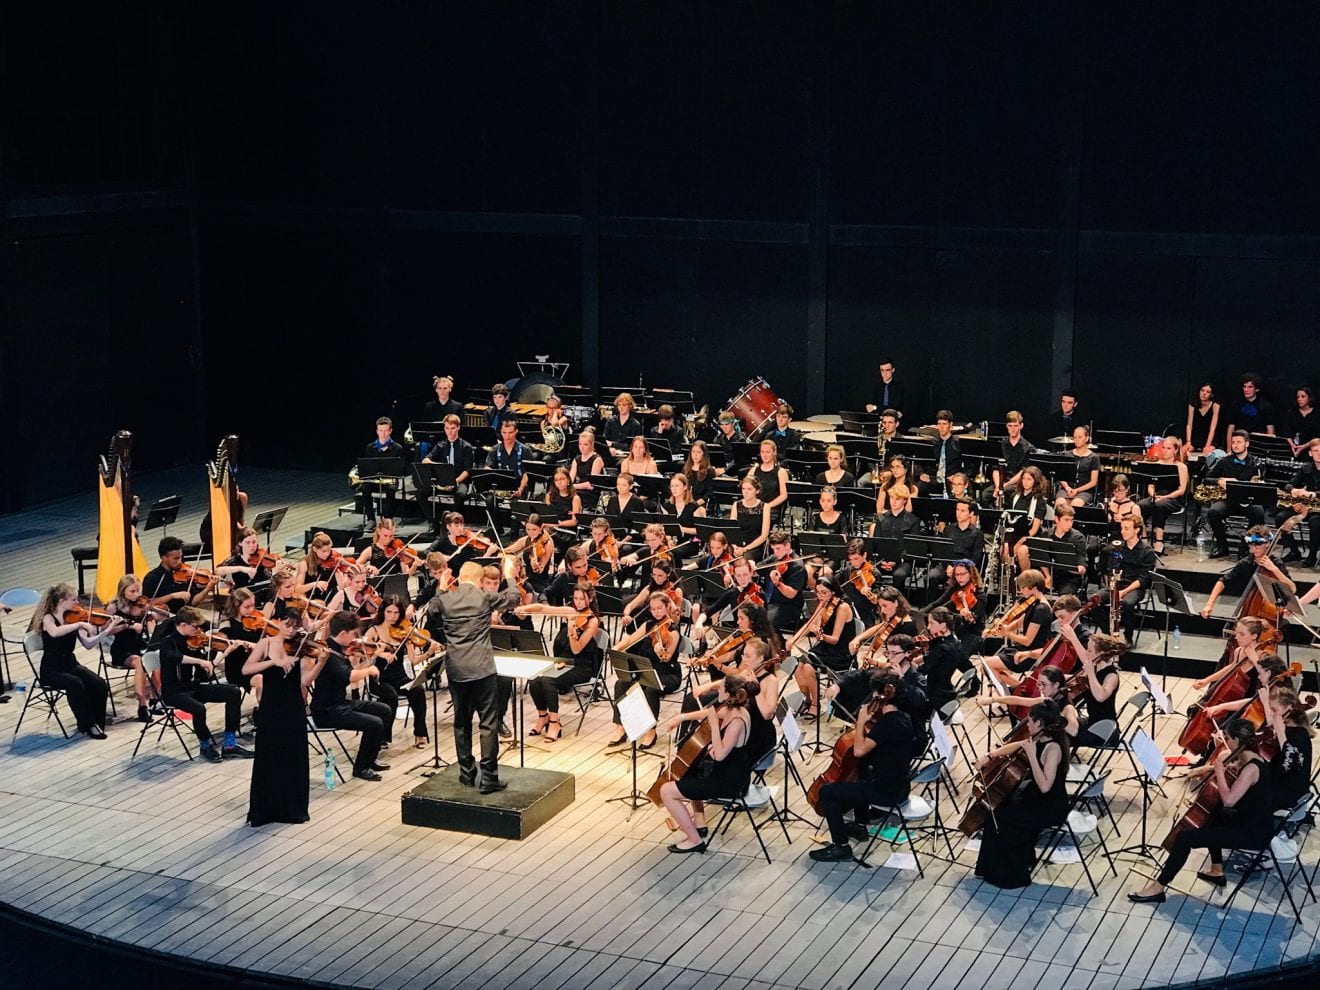 Abschlusskonzert des internationalen Austauschorchesters CHMYO 2021 